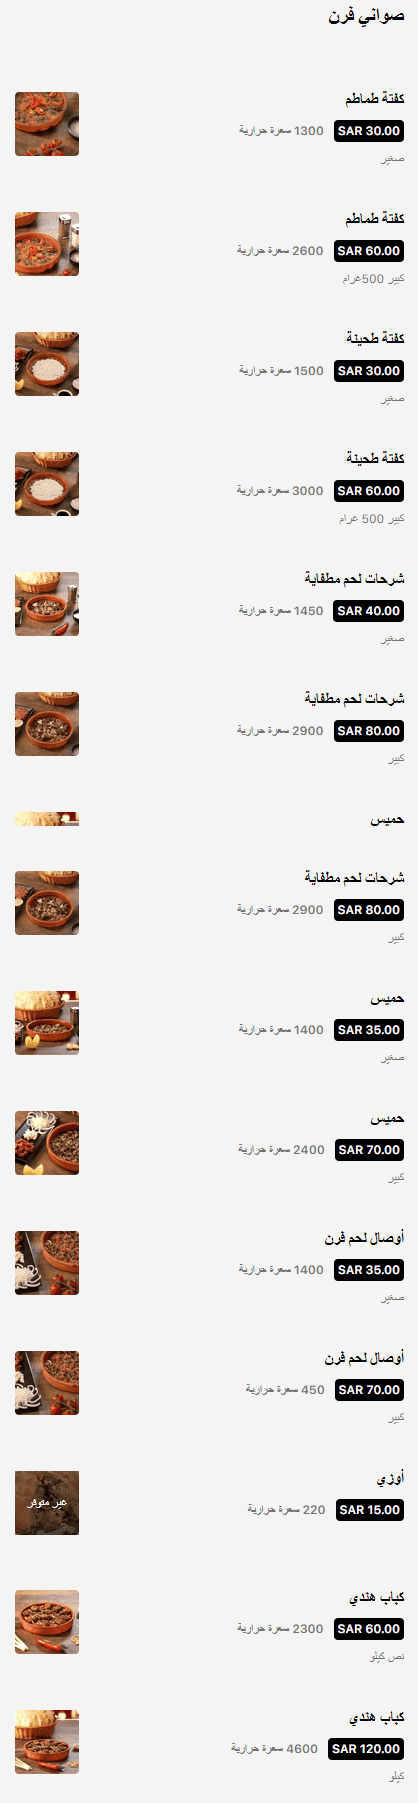 1 17 مطعم الجلاب الرياض | منيو + فروع + اسعار